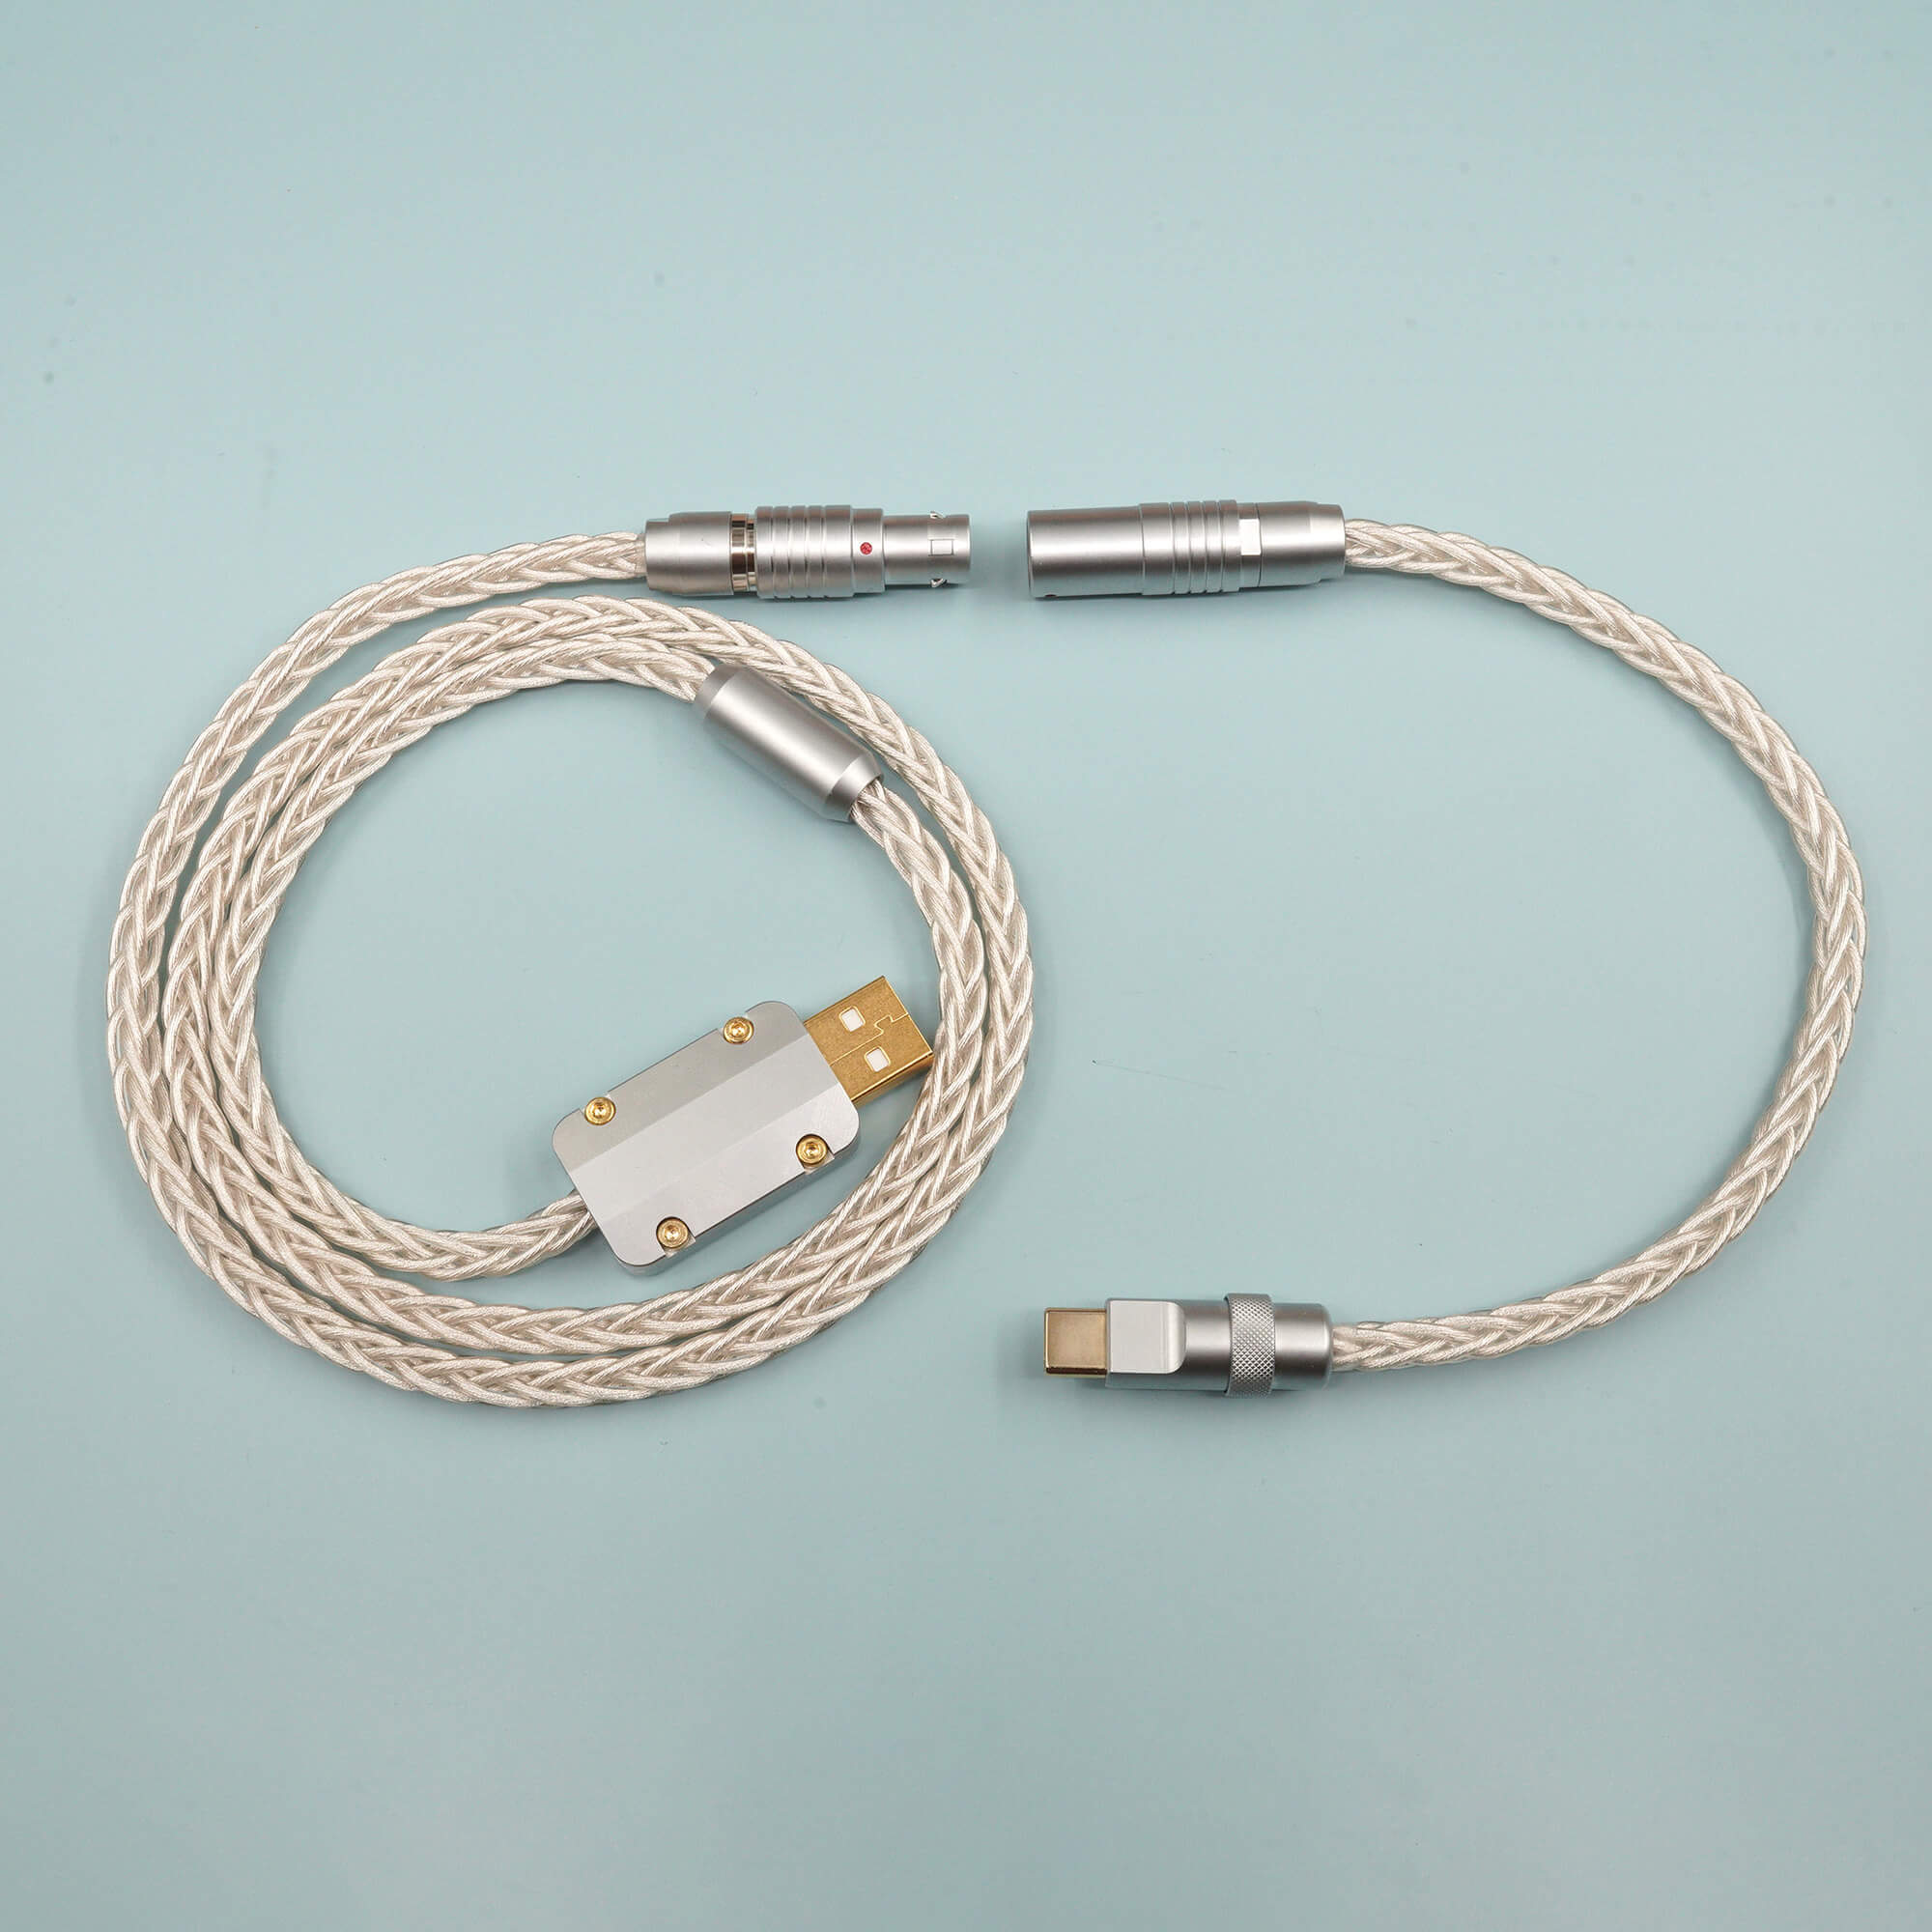 Câble USB en fil de cuivre monocristallin gainé d'argent fait à la main MelGeek